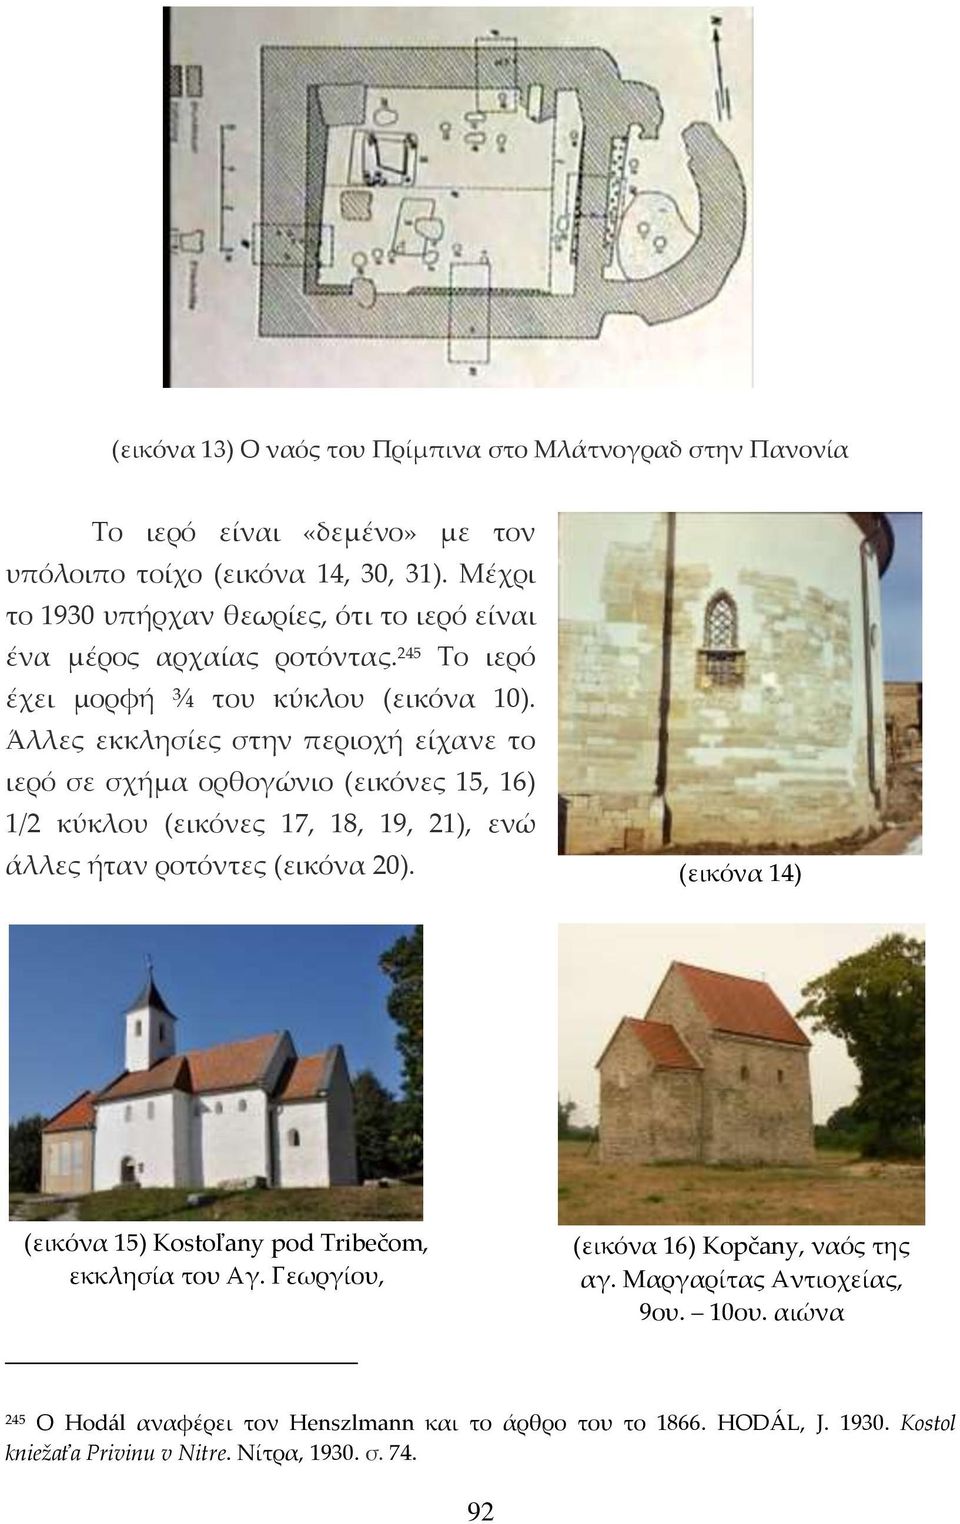 Άλλες εκκλησίες στην περιοχή είχανε το ιερό σε σχήμα ορθογώνιο (εικόνες 15, 16) 1/2 κύκλου (εικόνες 17, 18, 19, 21), ενώ άλλες ήταν ροτόντες (εικόνα 20).